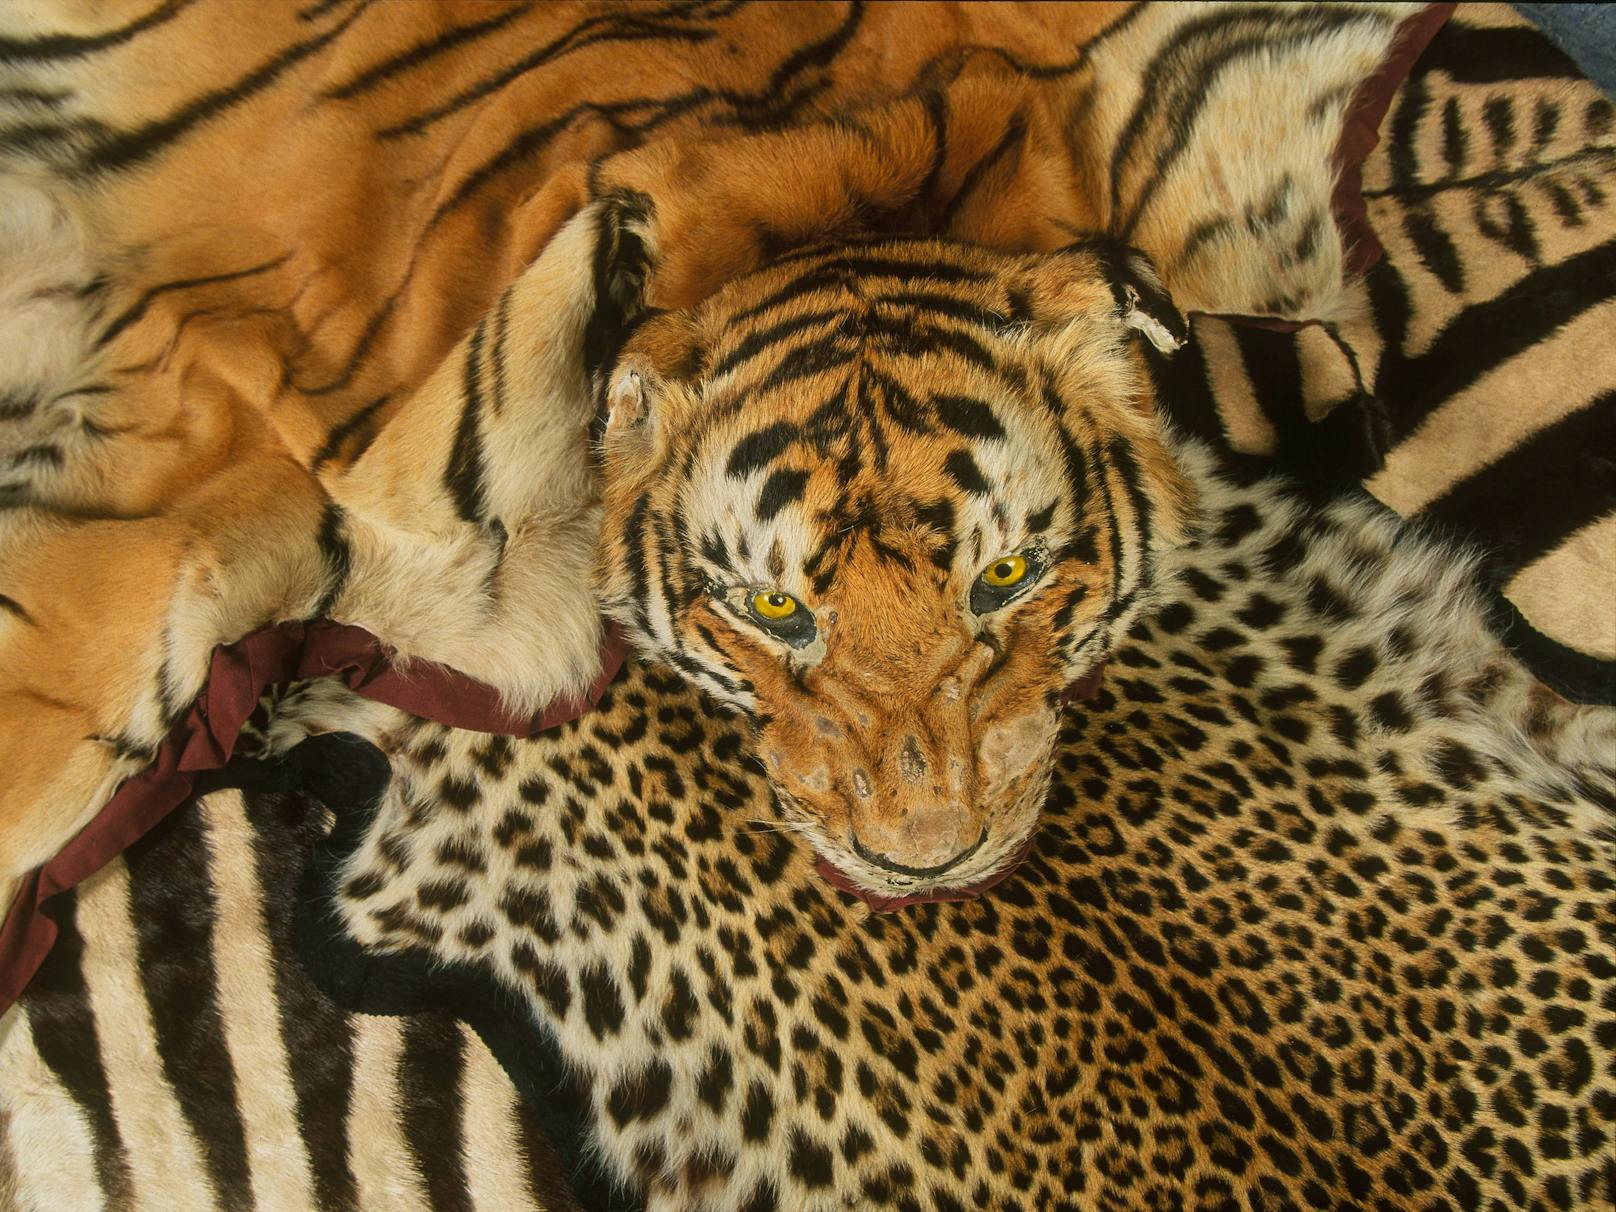 Am Flughafen Heathrow beschlagnahmte Tiger- und andere Felle seltener Tierarten.&nbsp;Tigerfelle sind in einigen Ländern immer noch als luxuriöse Dekorationsartikel gefragt, werden illegal gehandelt und geschmuggelt.